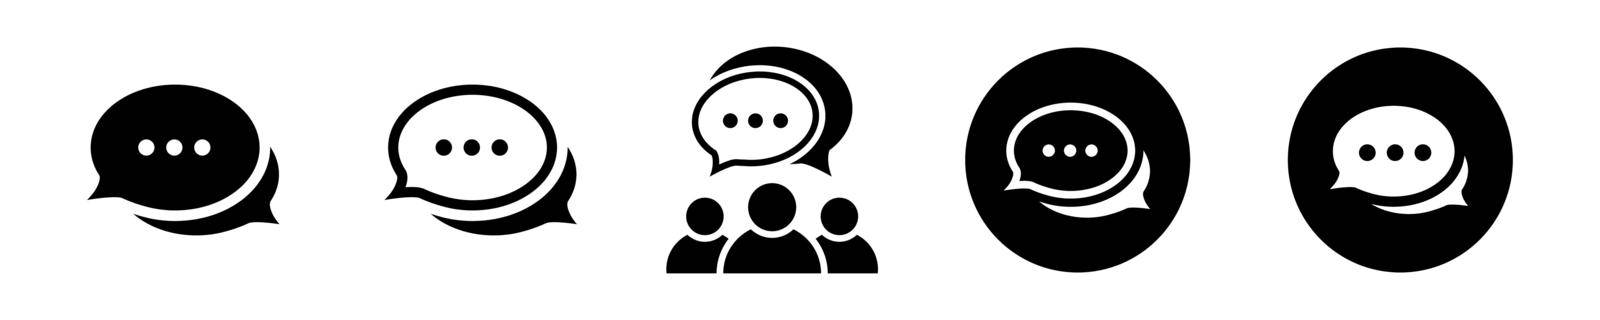 Talk bubble icon set in flat Speech bubble symbols by veronawinner